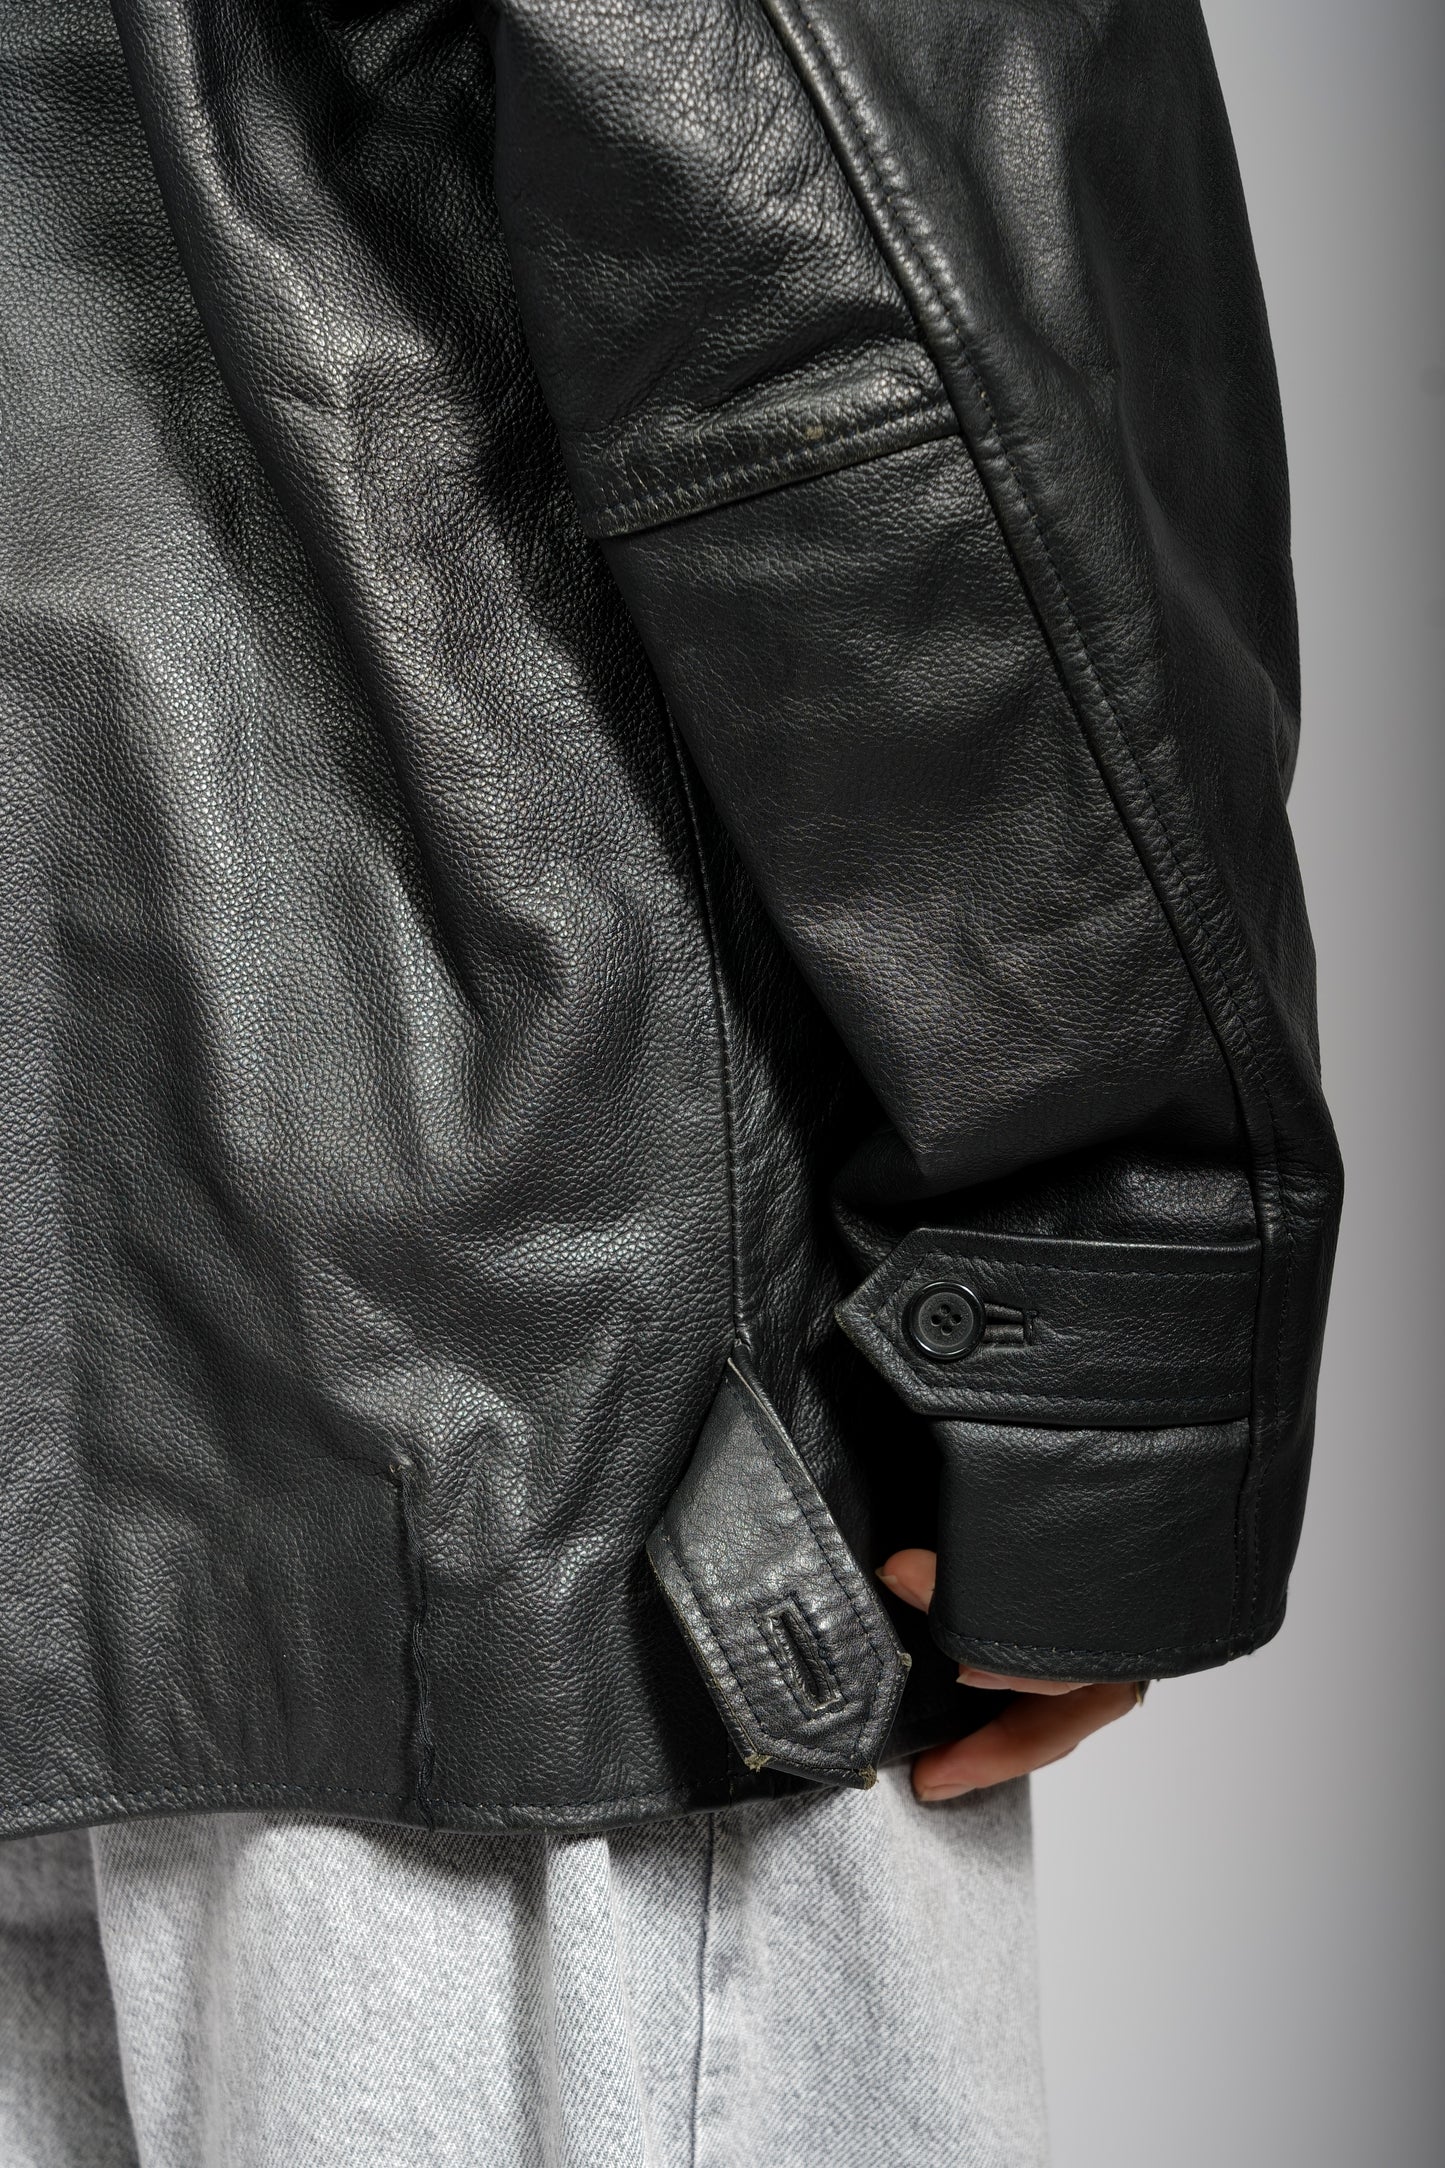 Vintage - Leather Jacket